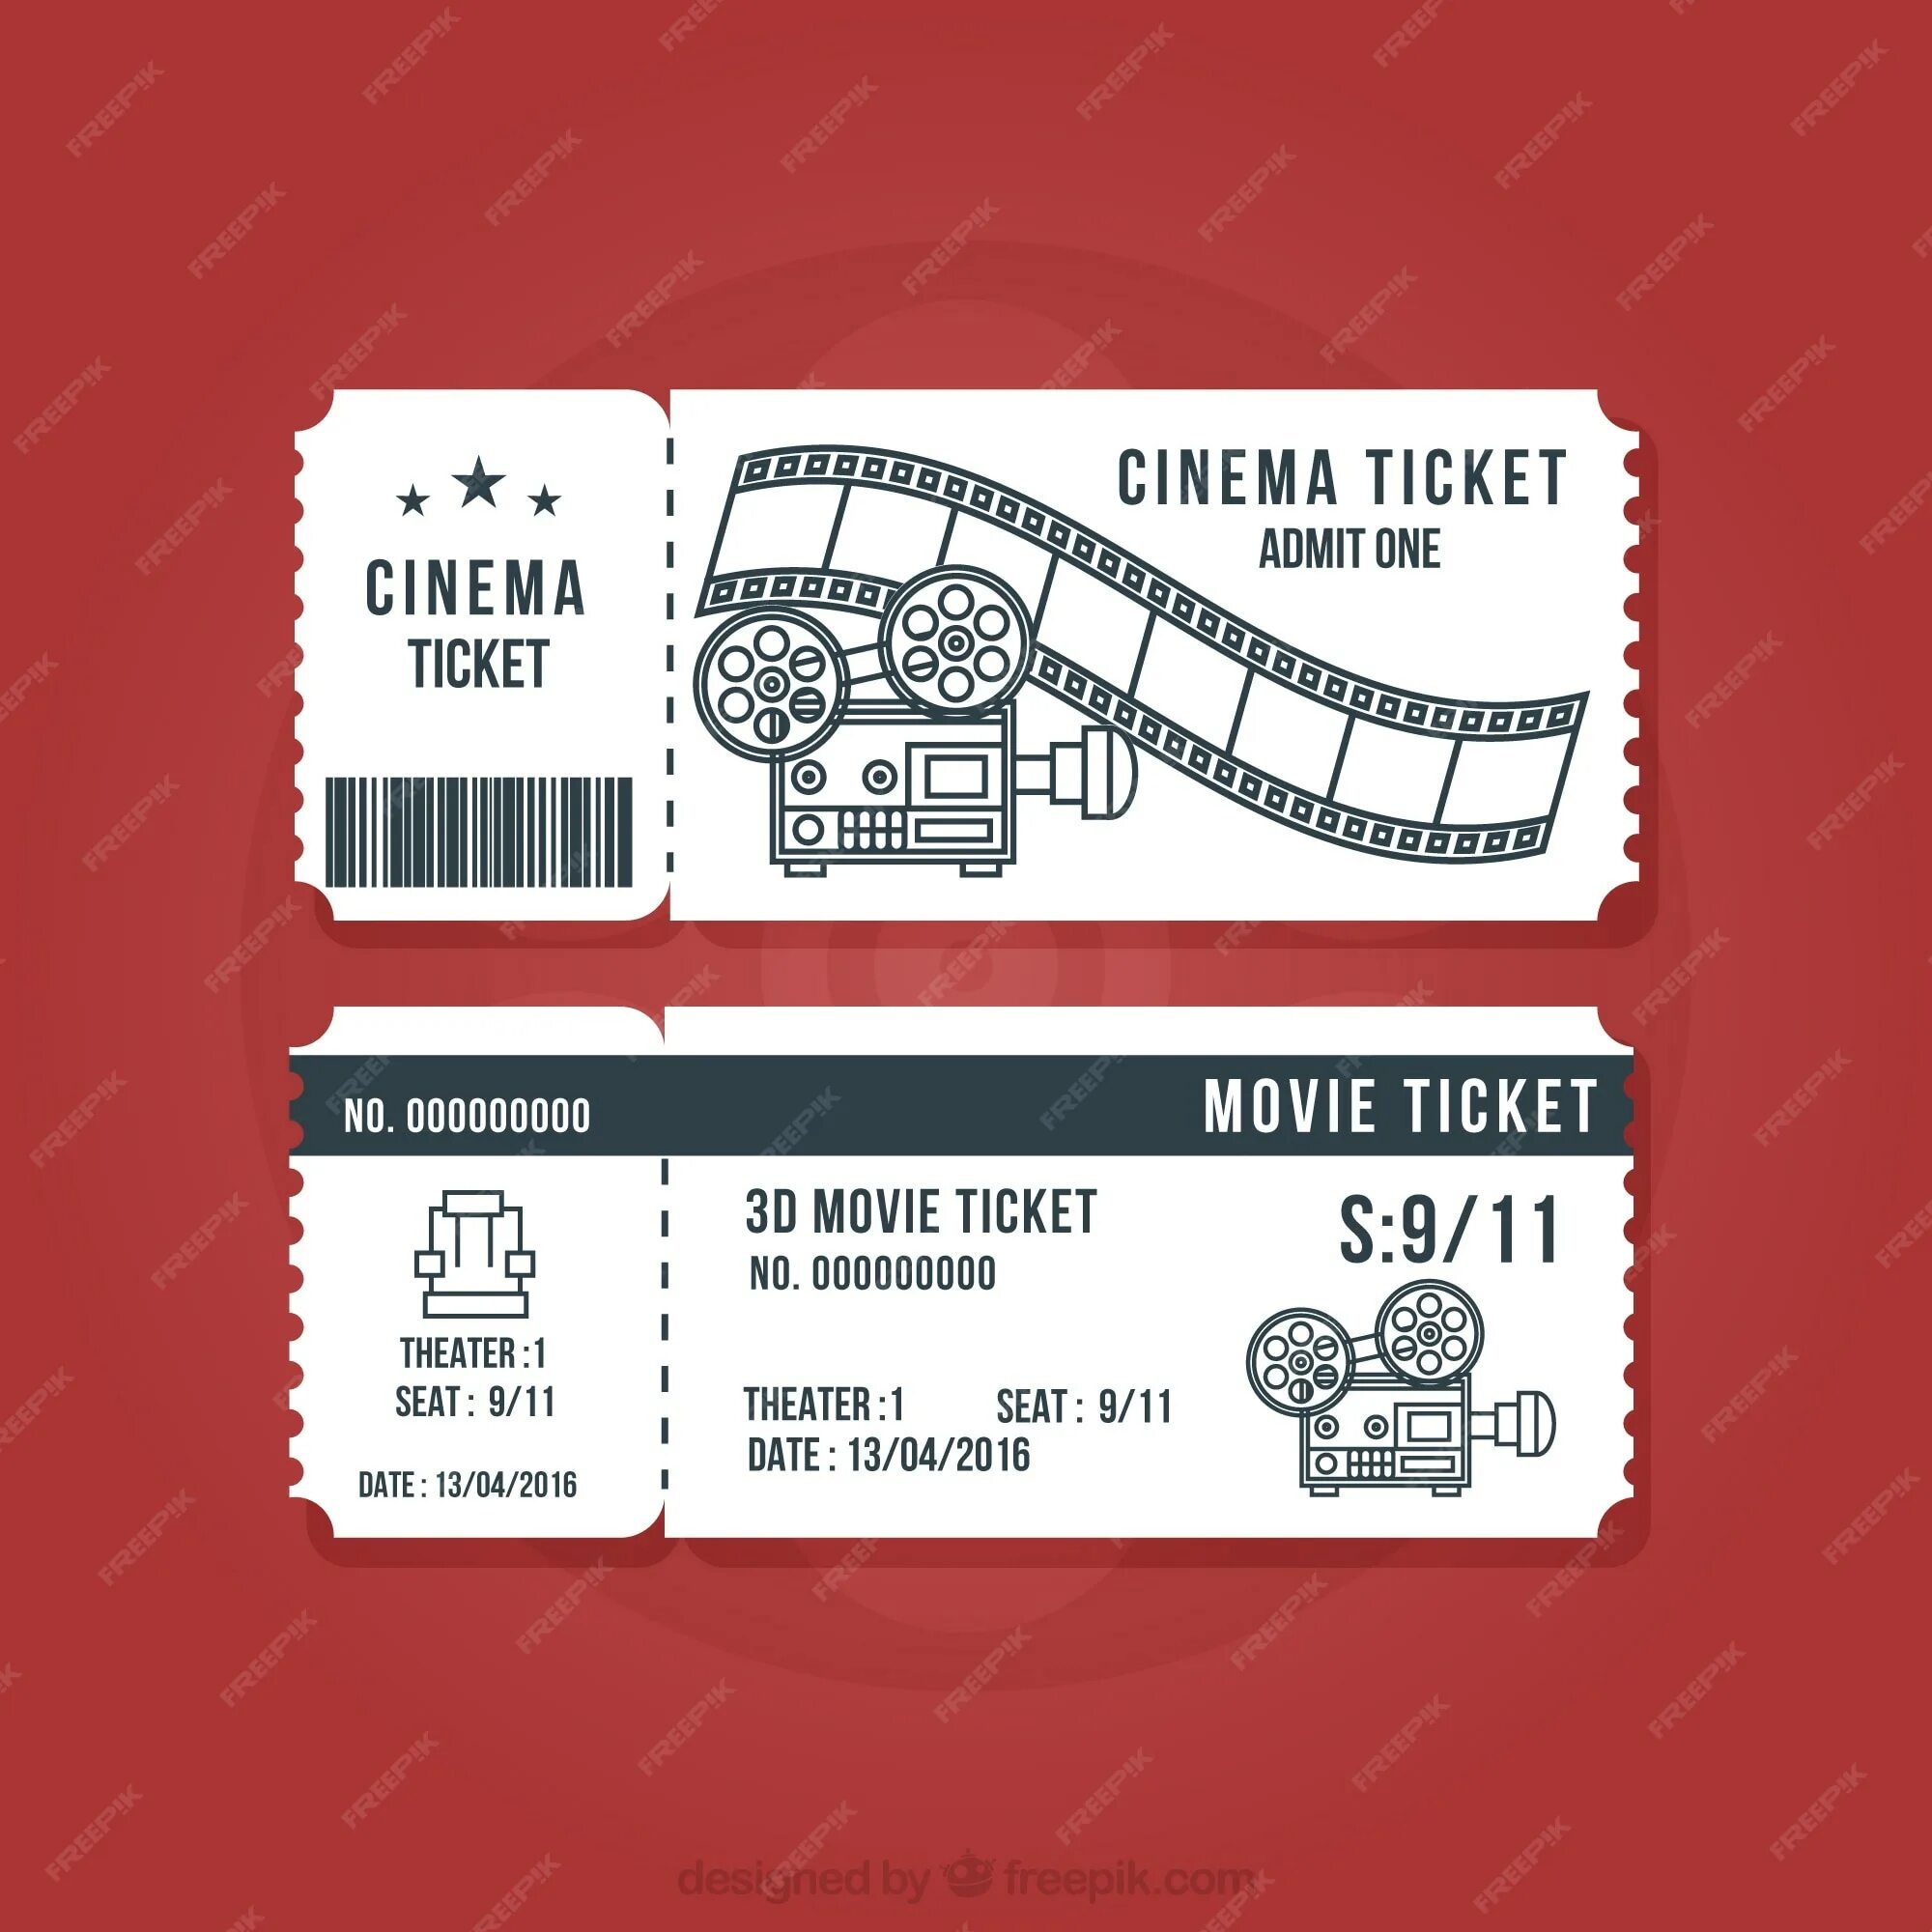 Ticket de. Билет в кинотеатр шаблон для печати. Макет билета. Макет билета в кинотеатр.